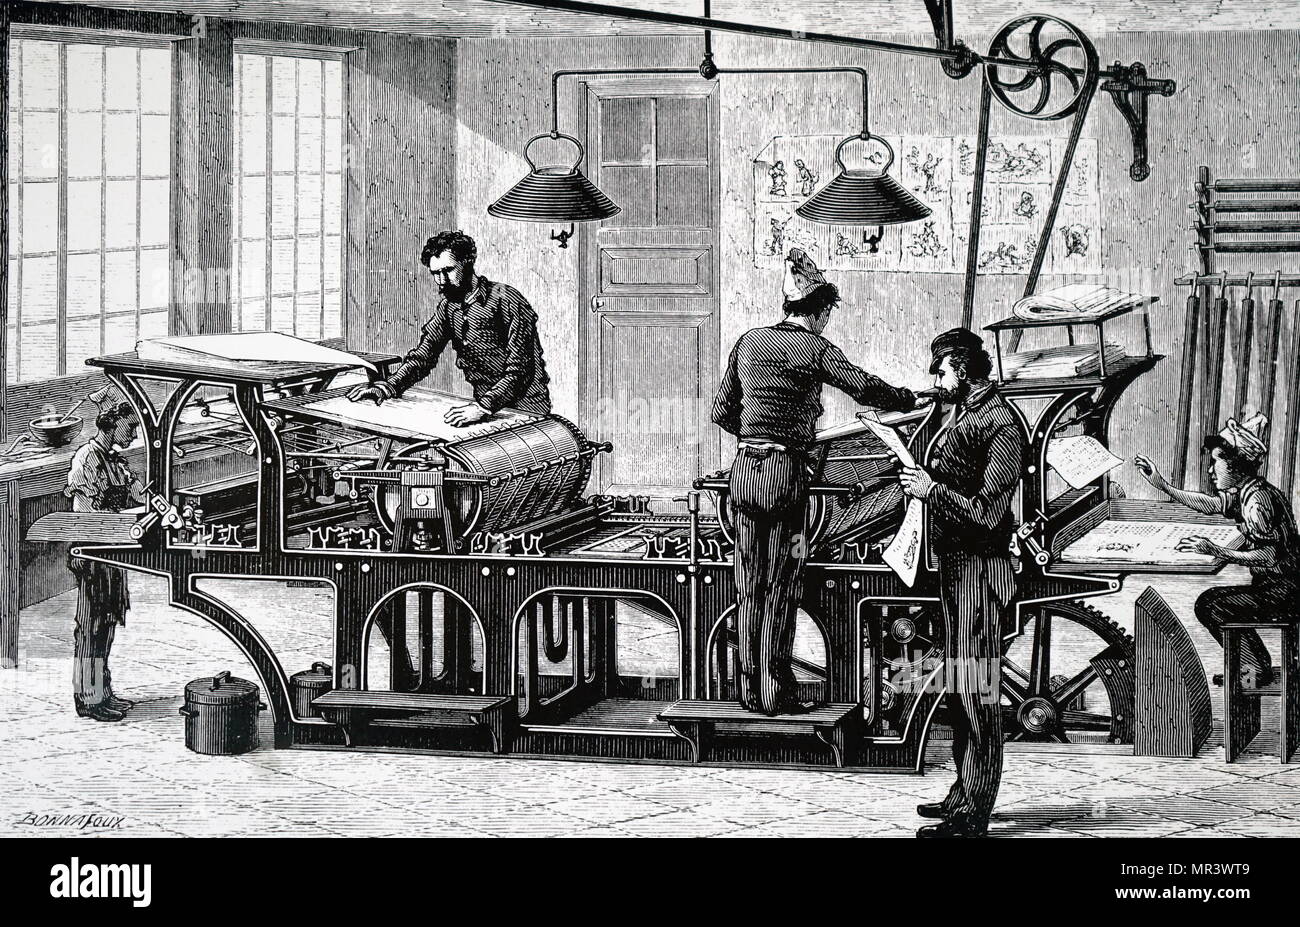 Gravur Darstellung einer Druckmaschine von einer Dampfmaschine angetrieben. Wurde die Maschine von einer obenliegenden Welle und Riemenantrieb gebracht. Vom 19. Jahrhundert Stockfoto